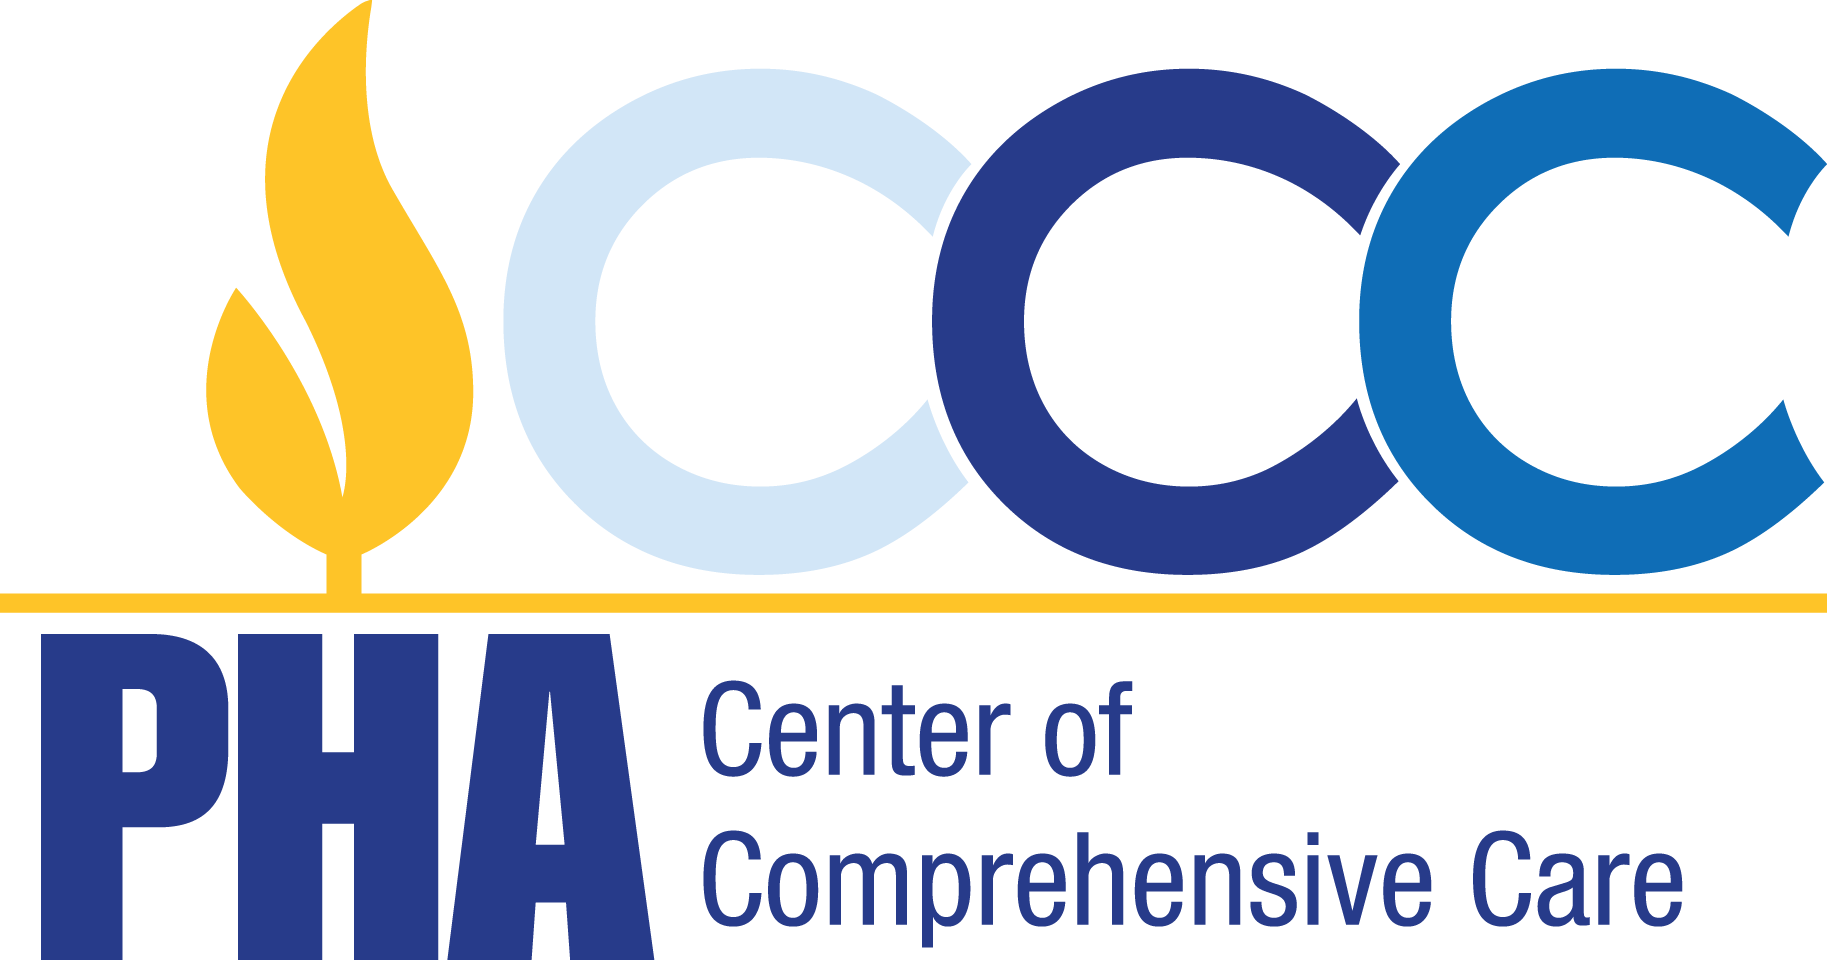 PHA Center of Comprehensive Care Logo